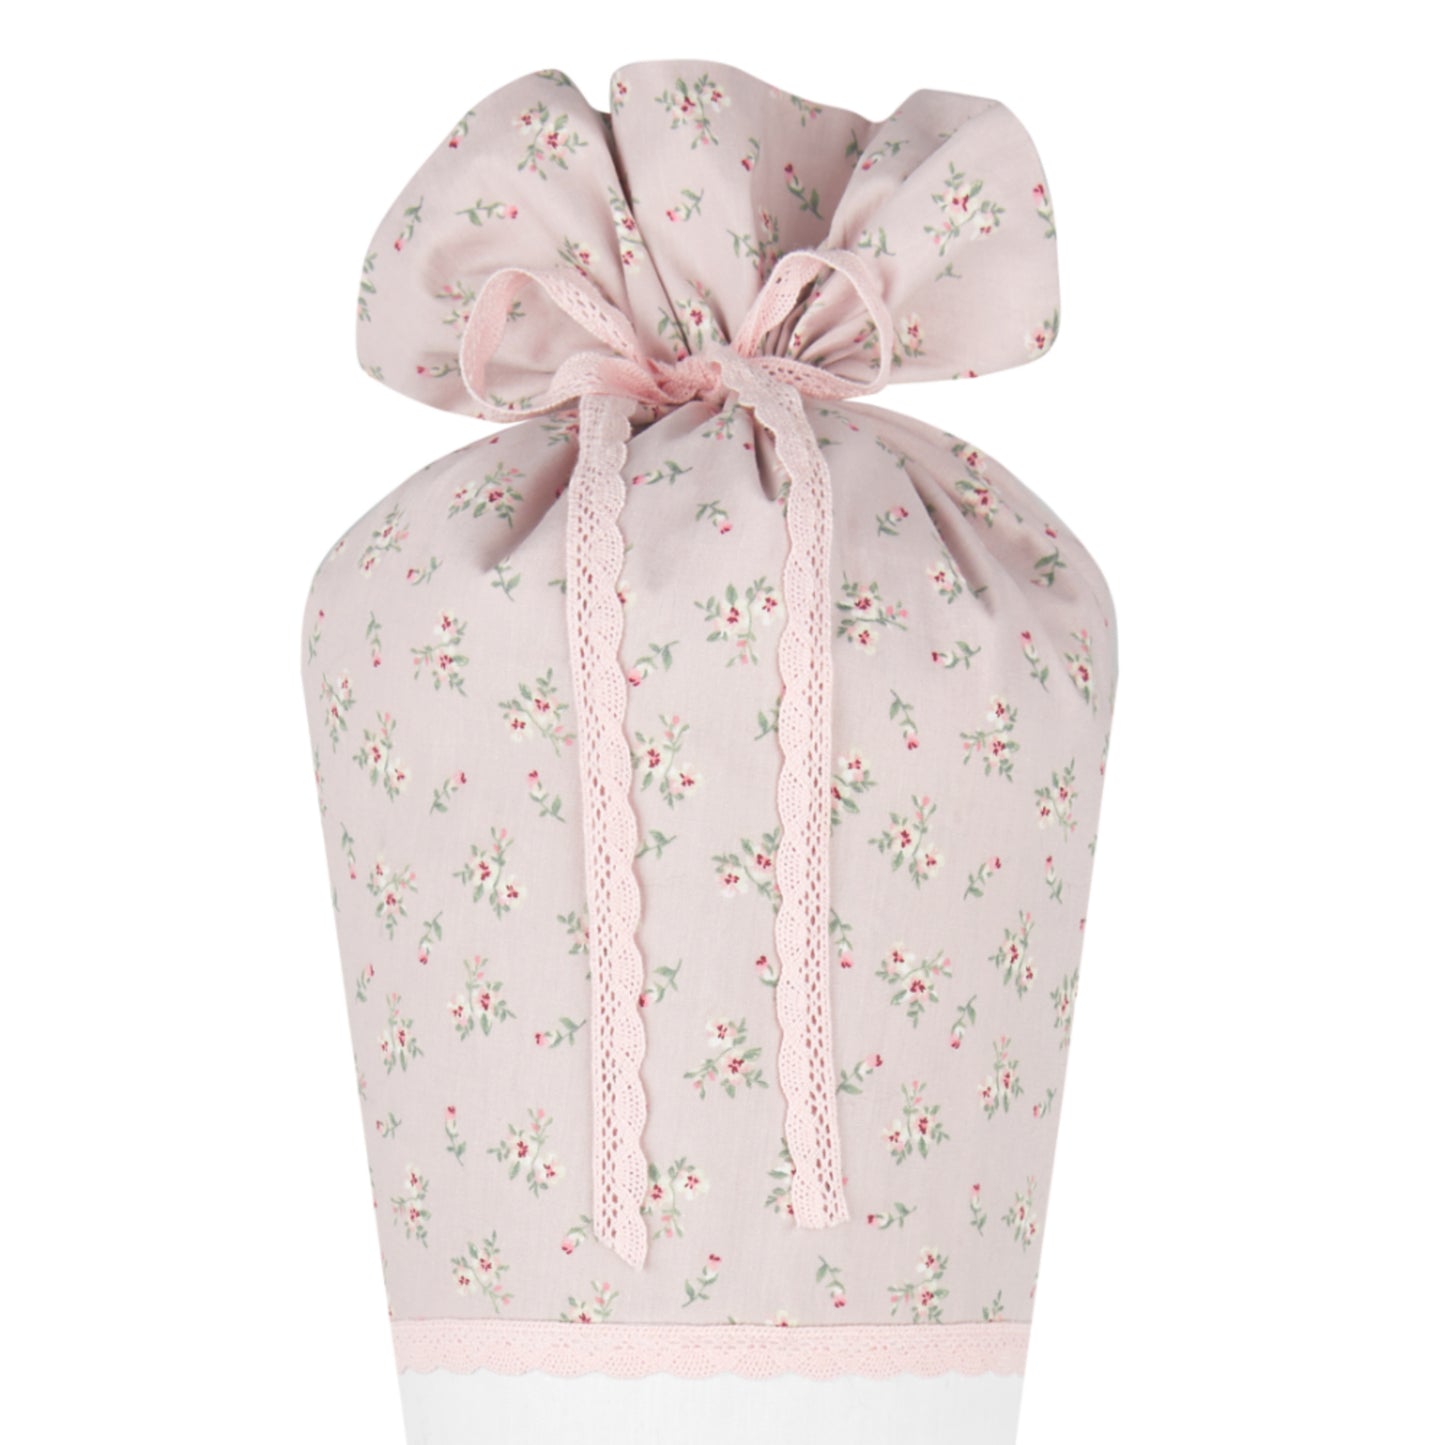 Personalisierte rosa Stoff Zuckertüte Rehkitz Schultüte Bambi für Mädchen mit Namen Einschulungstüte Einschulung Datum Blumen Füllkissen 70 cm I Optional mit Füllkissen und Spitzenschutz